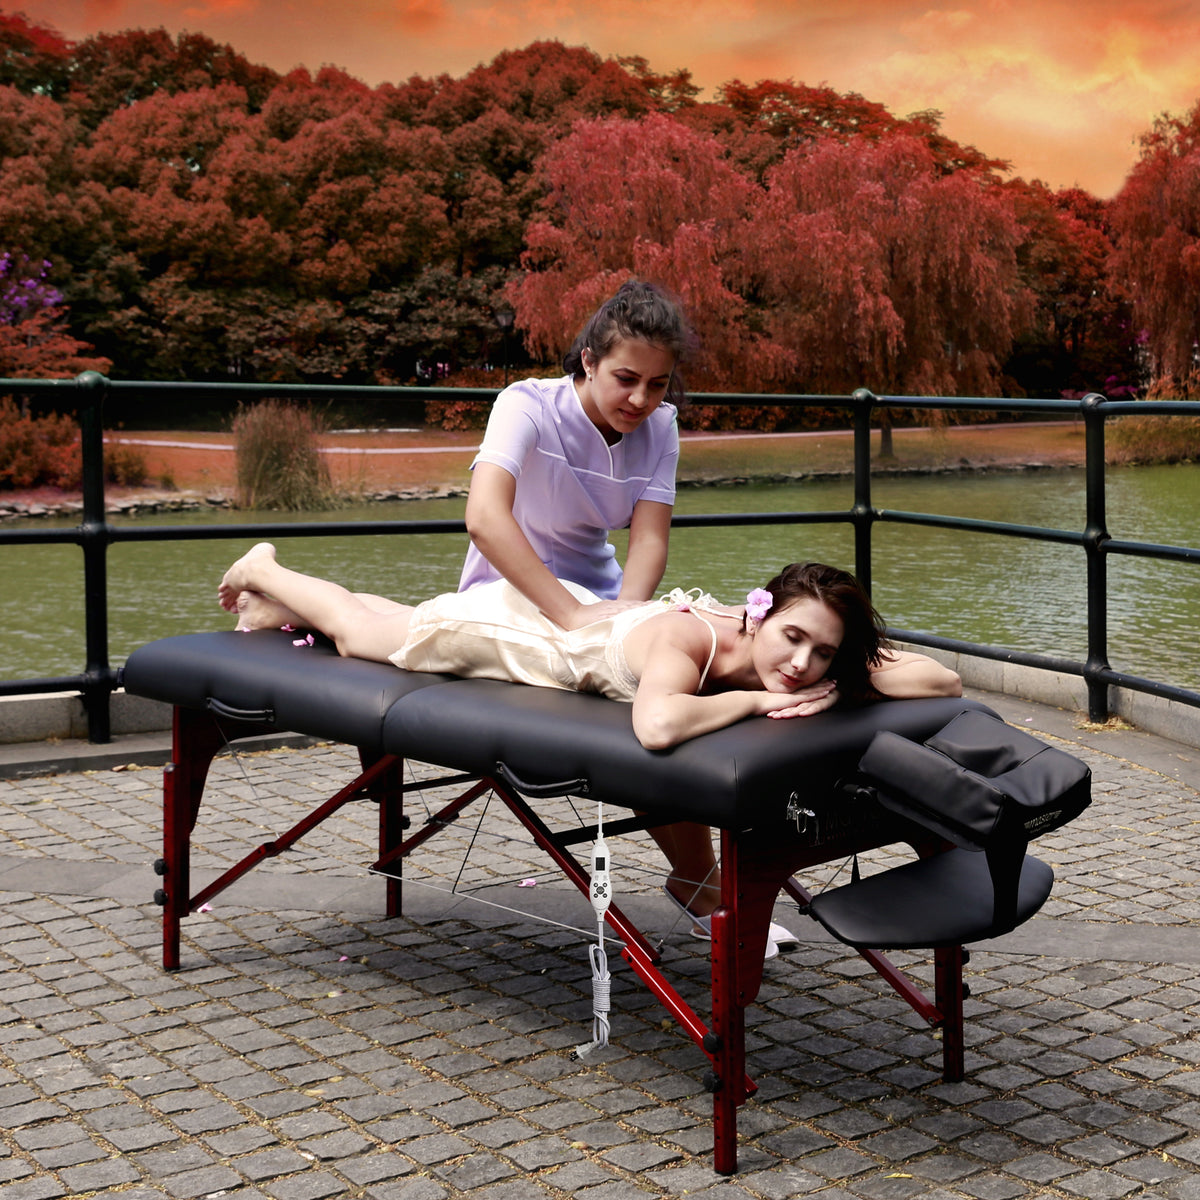 Master Massage - Montclair Portable Massage Table Black 31&quot; - Superb Massage Tables